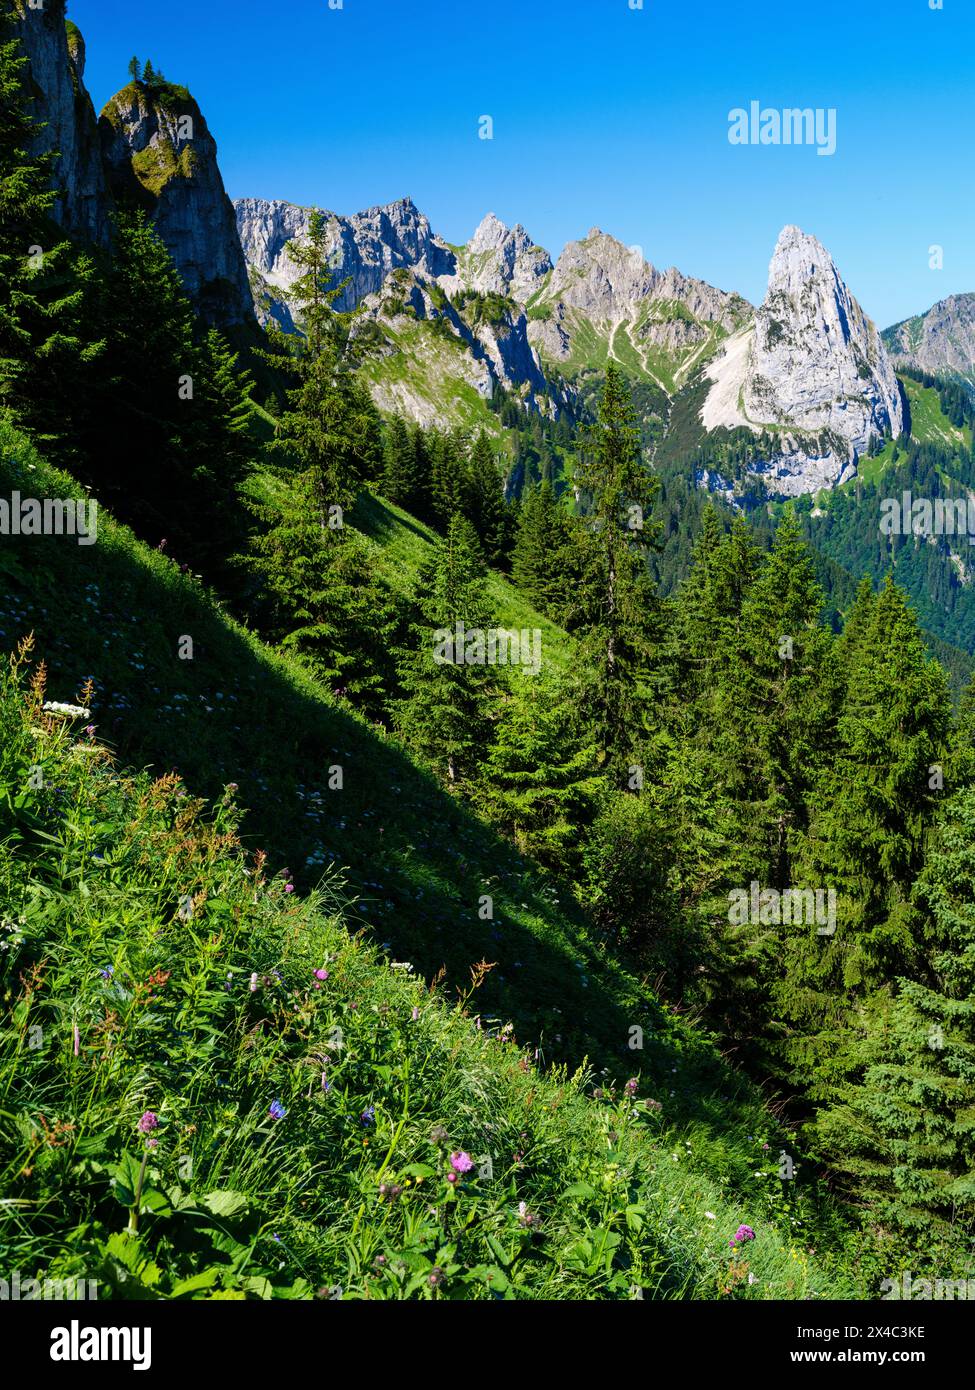 Blick in Richtung Mt. Geiselstein. Naturpark Ammergauer Alpen in den nördlichen Kalkalpen Oberbayerns. Stockfoto